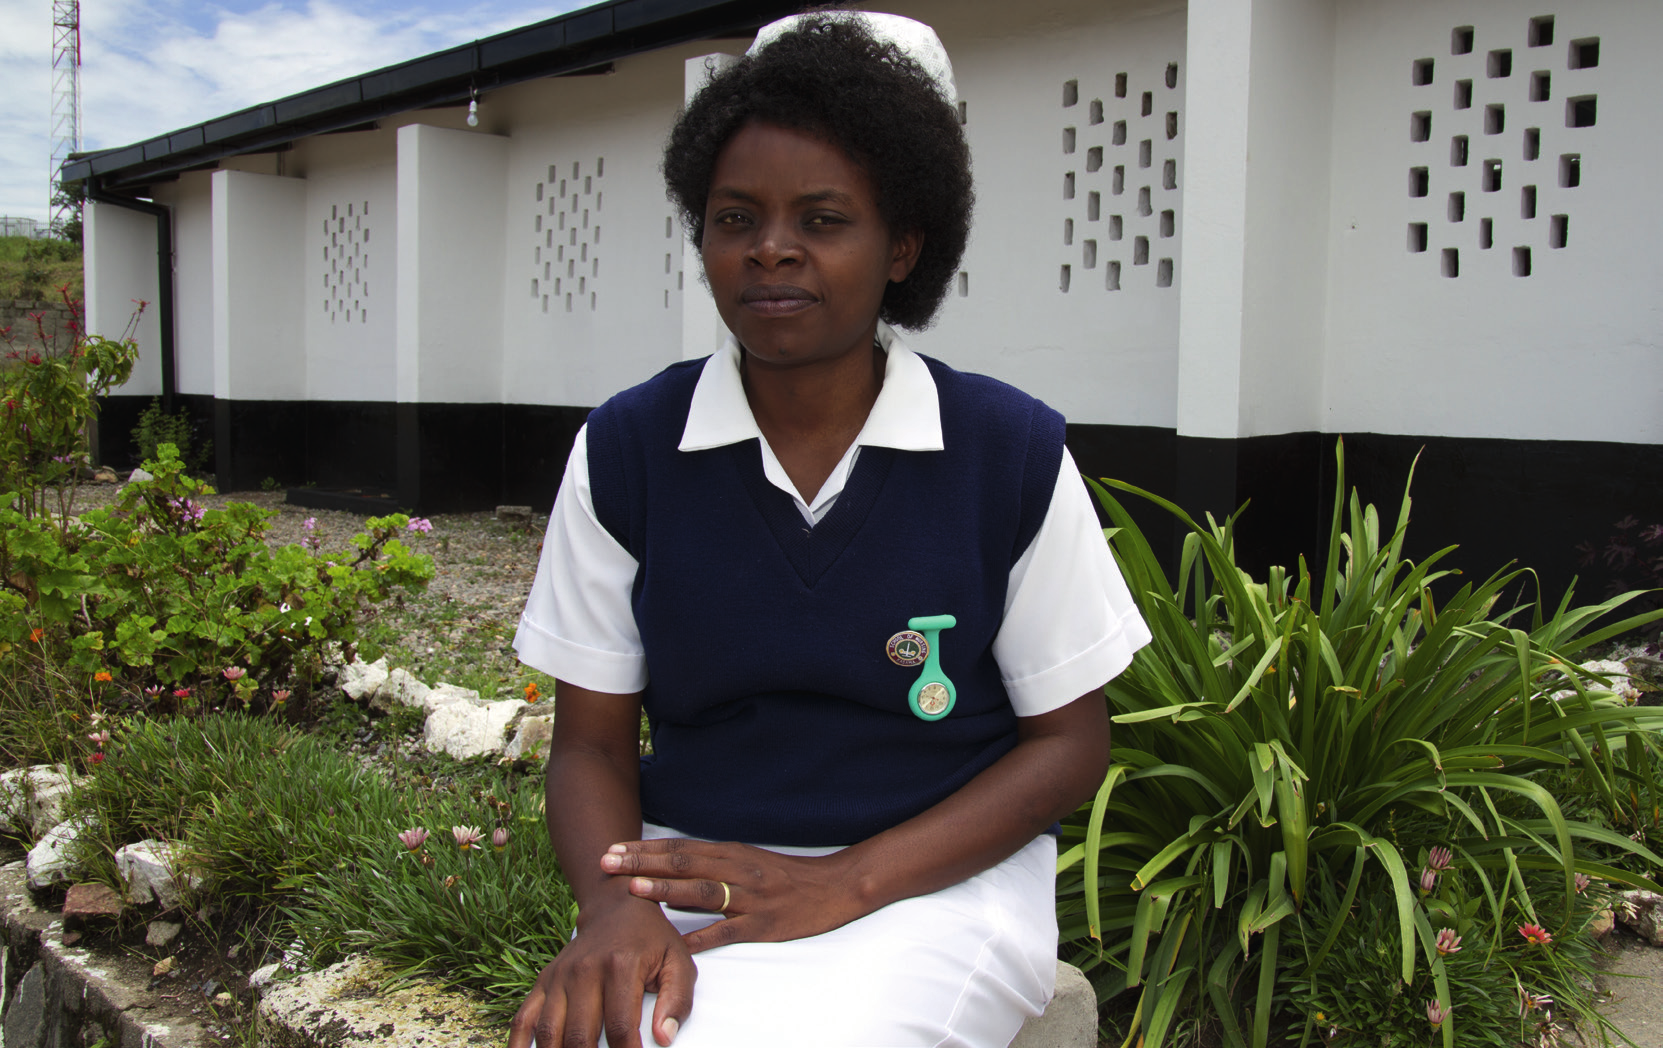 Siostra Elisheba Chali pracuje w szpitalu Kabundi East, niedaleko Chingola w Zagłębiu Miedziowym w Zambii. Wpływ uchylania się od podatków na opiekę zdrowotną w Zambii.